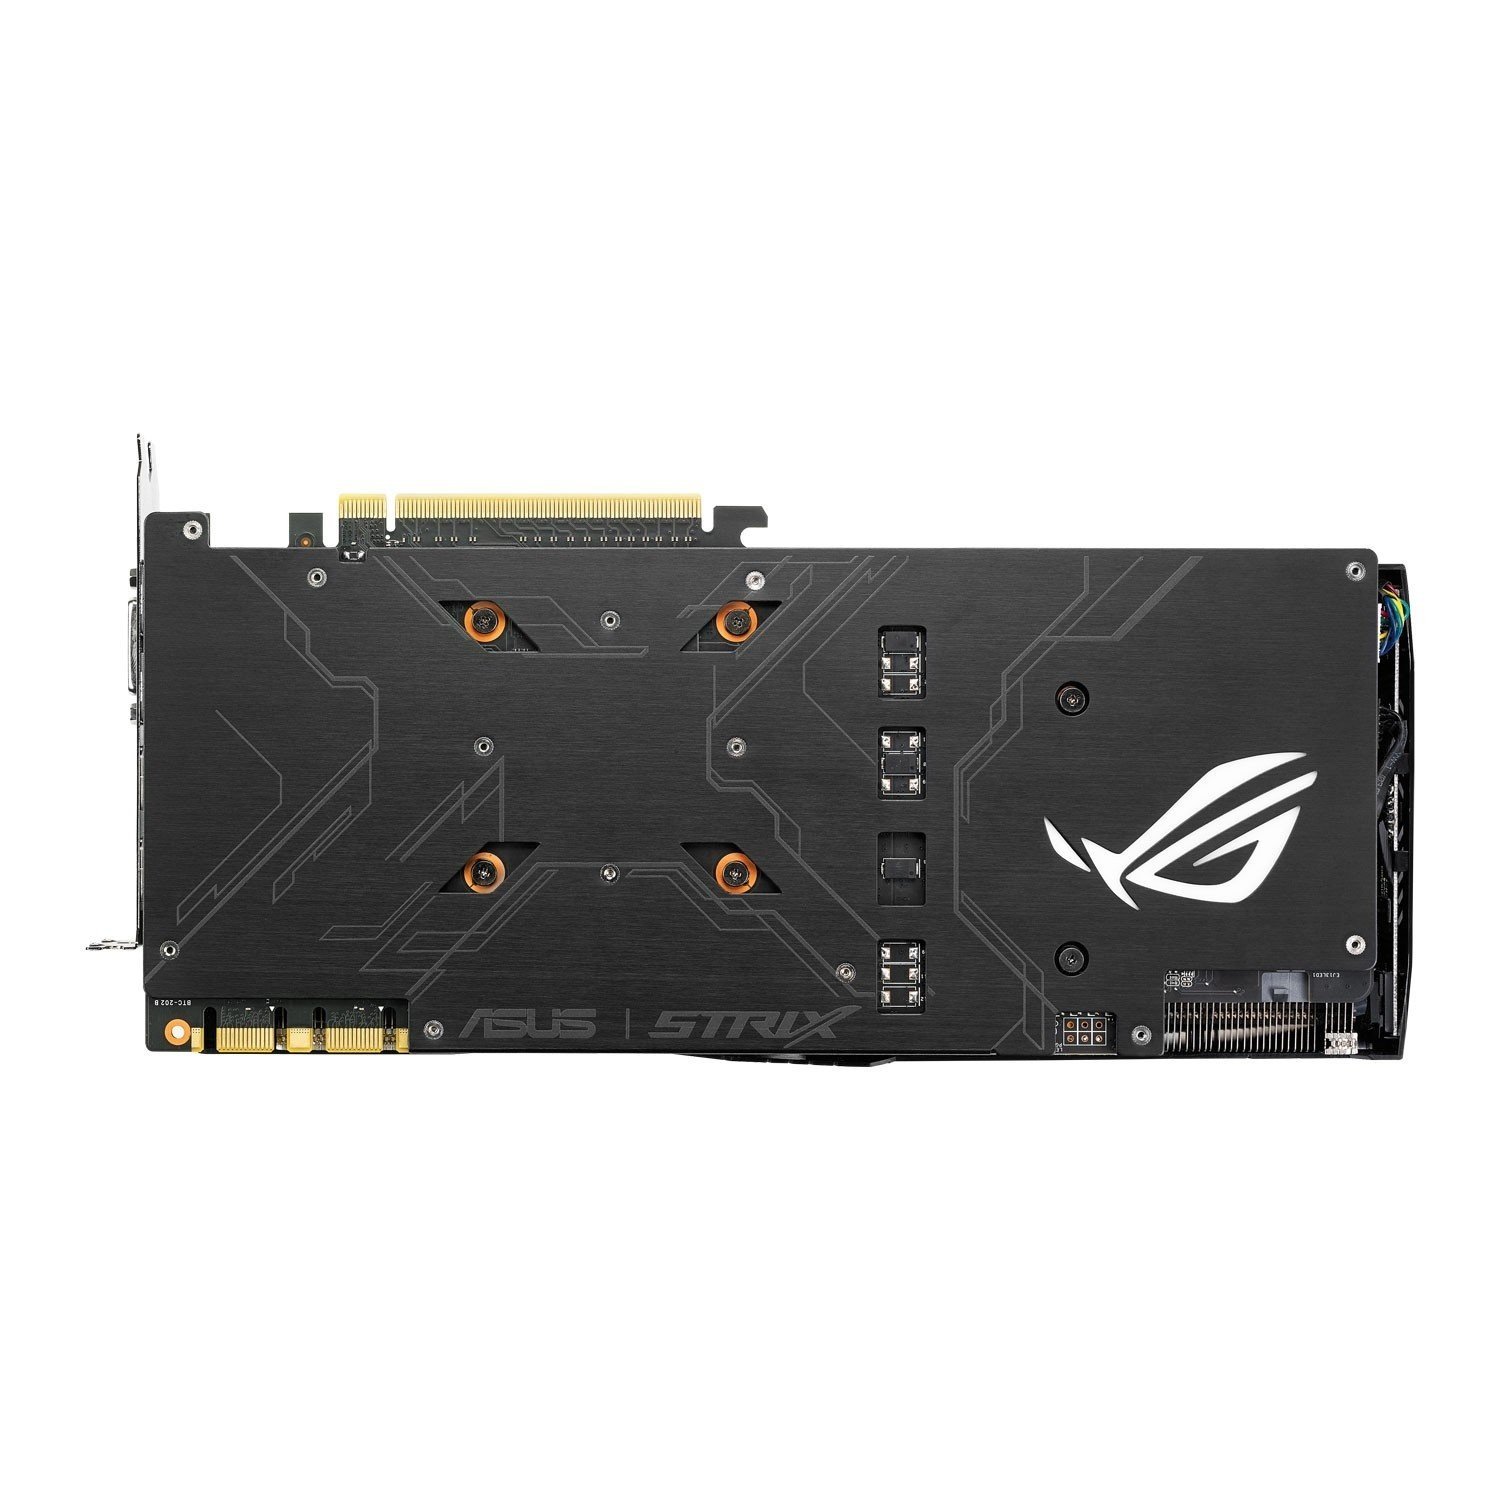 ASUS GeForce GTX 1070 8GB ROG STRIX Graphic Card STRIX-GTX1070-8G-GAMING